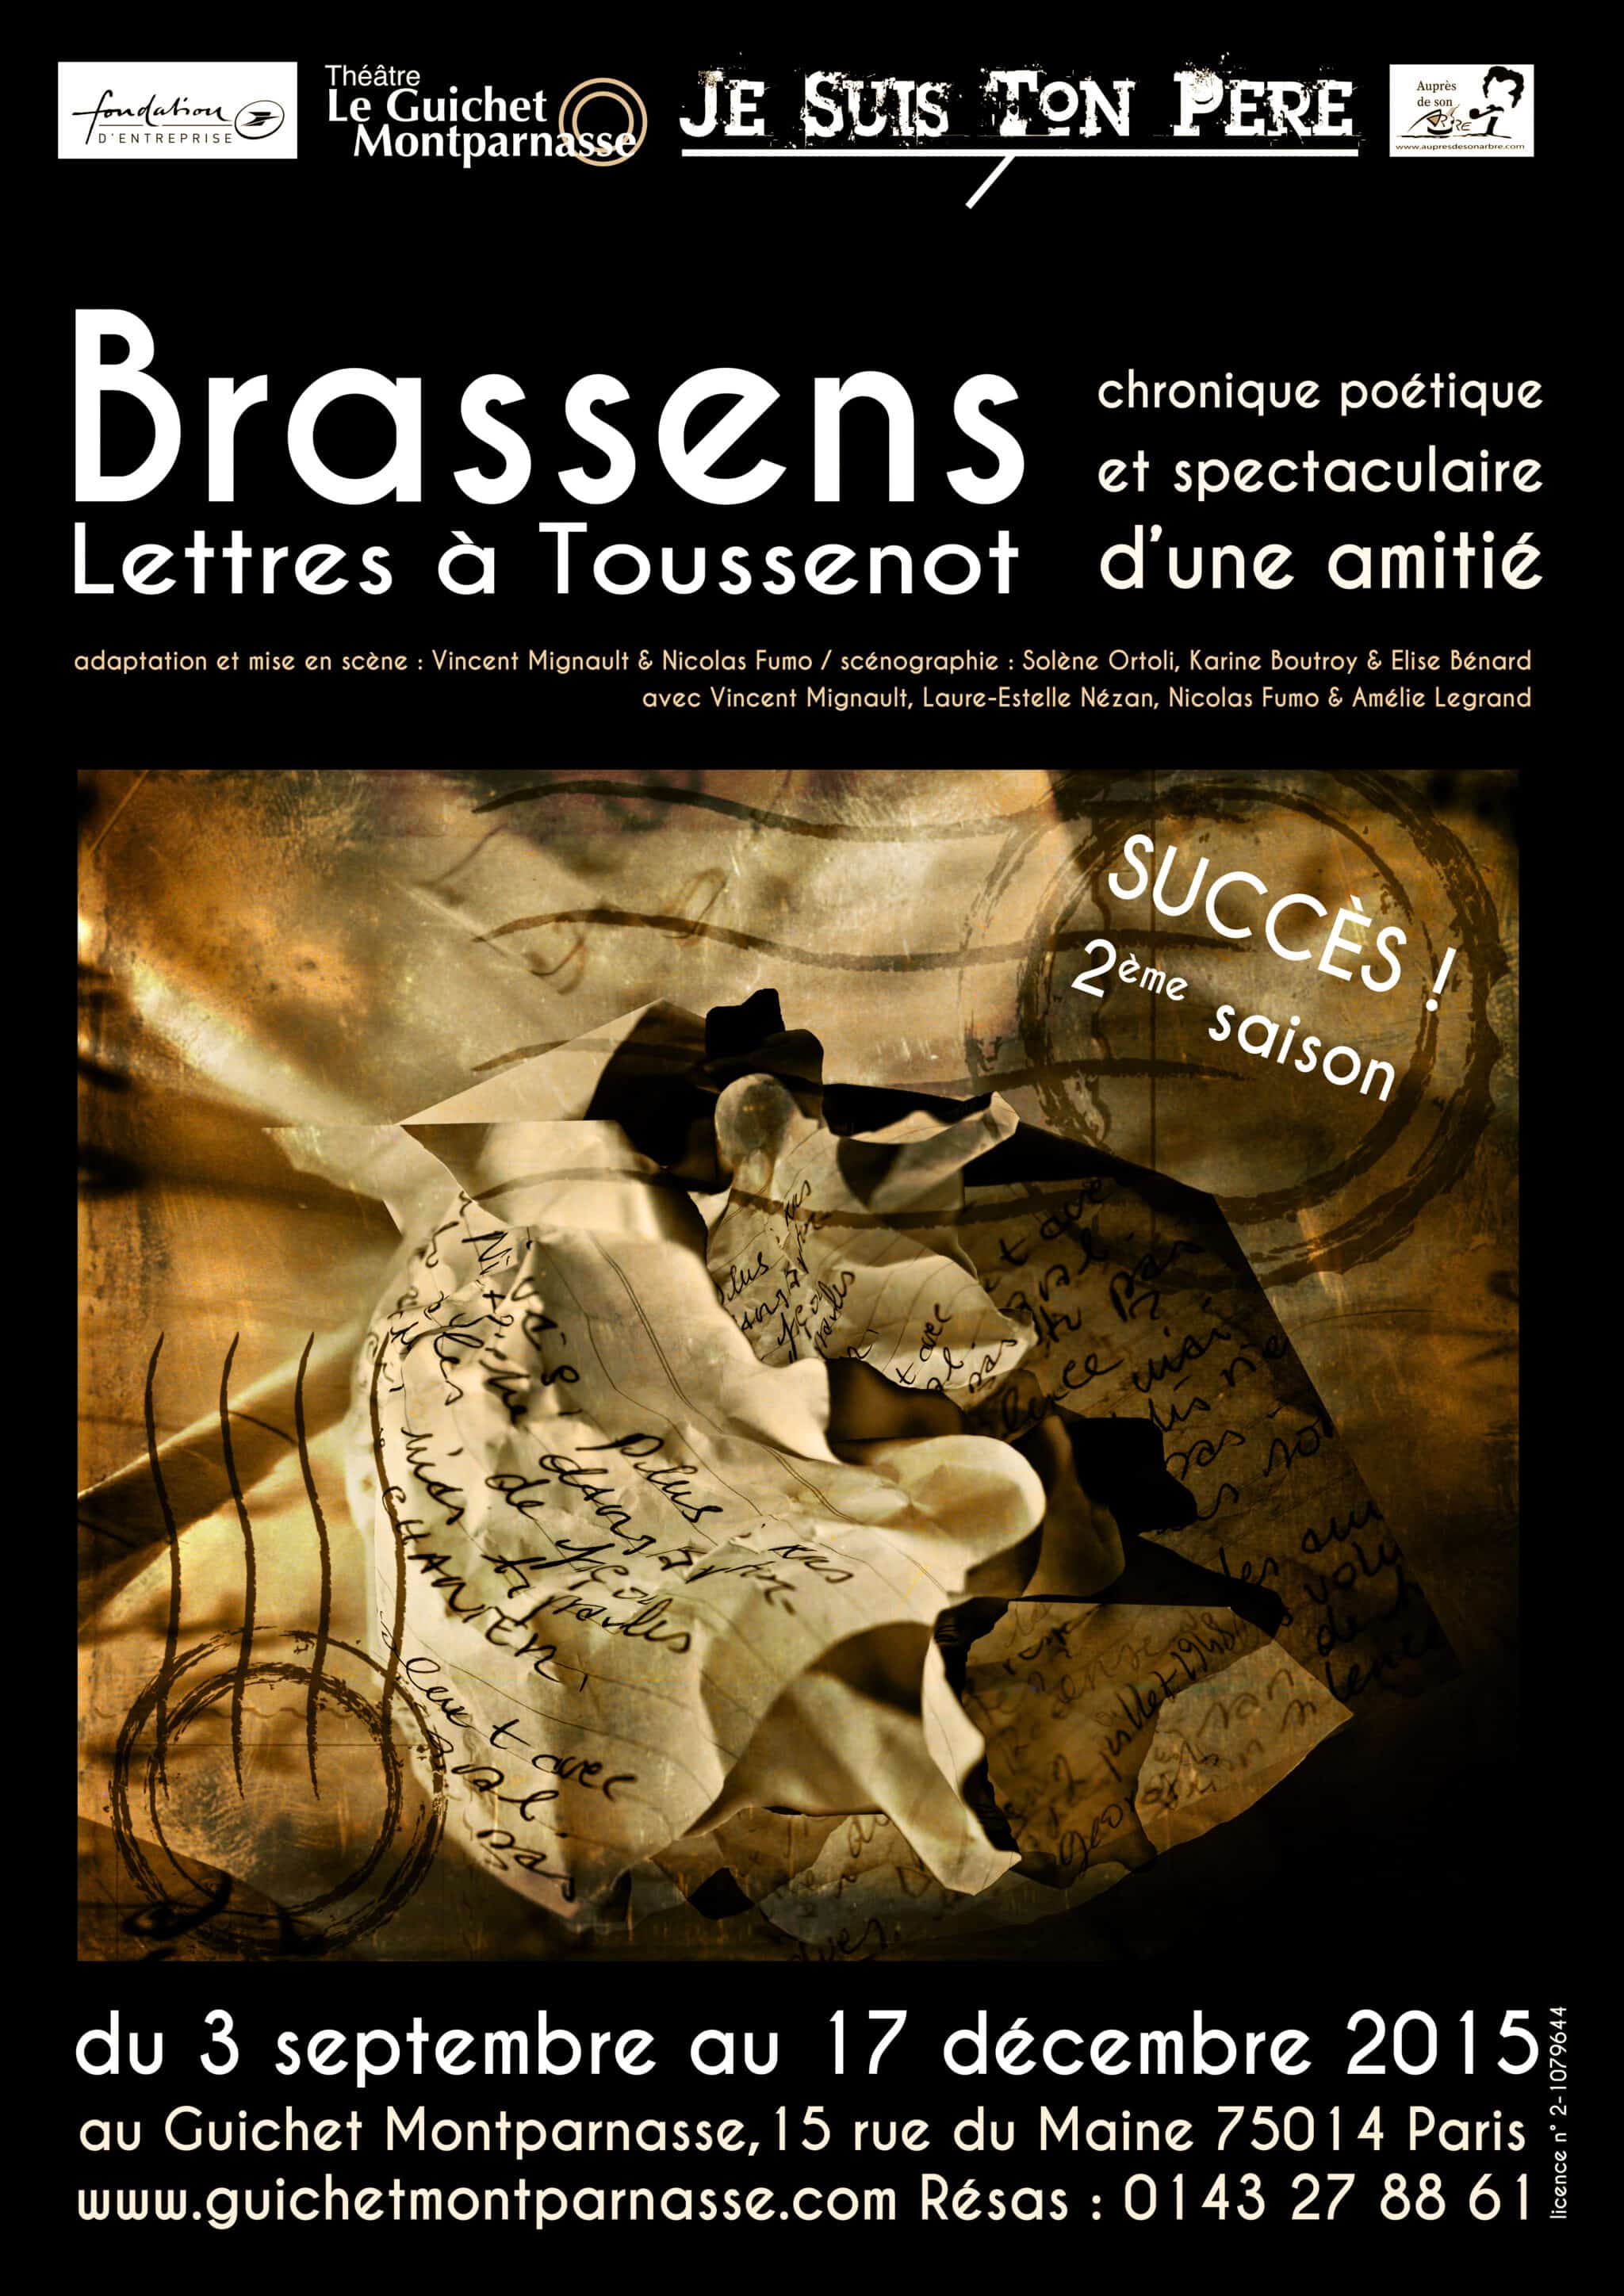 Brassens, un homme à travers ses lettres, une mise en scène des « Lettres à Toussenot » au Guichet Montparnasse 2